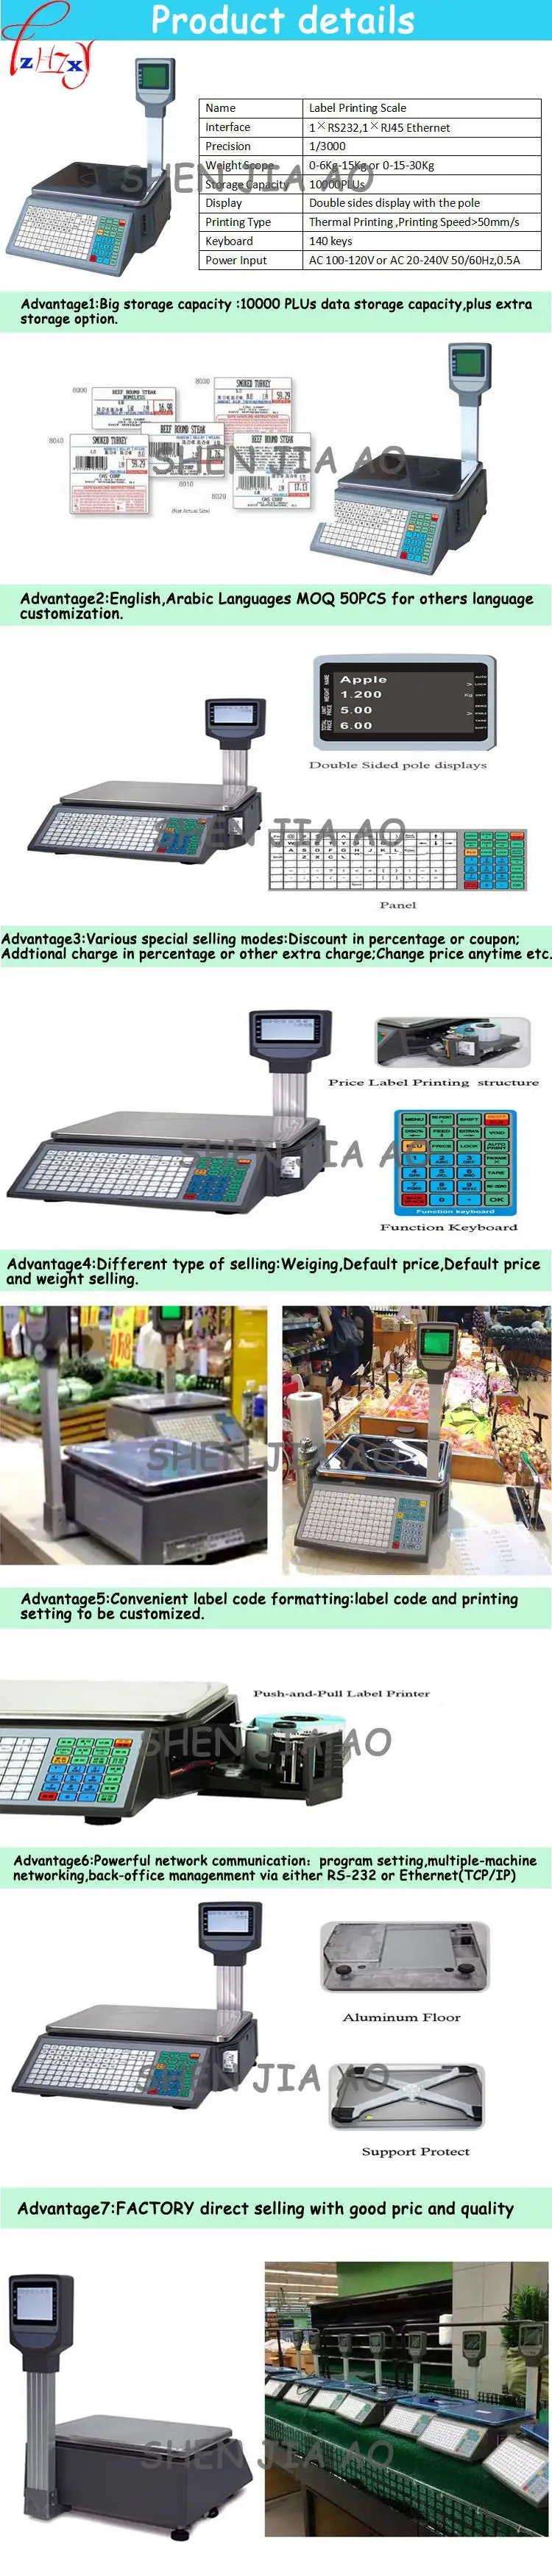 Супермаркет электронные весы с расчетом стоимости печать штрих-кода весы с расчетом стоимости английский, арабский высокоточные весы с расчетом стоимости 110/220 V 1 шт